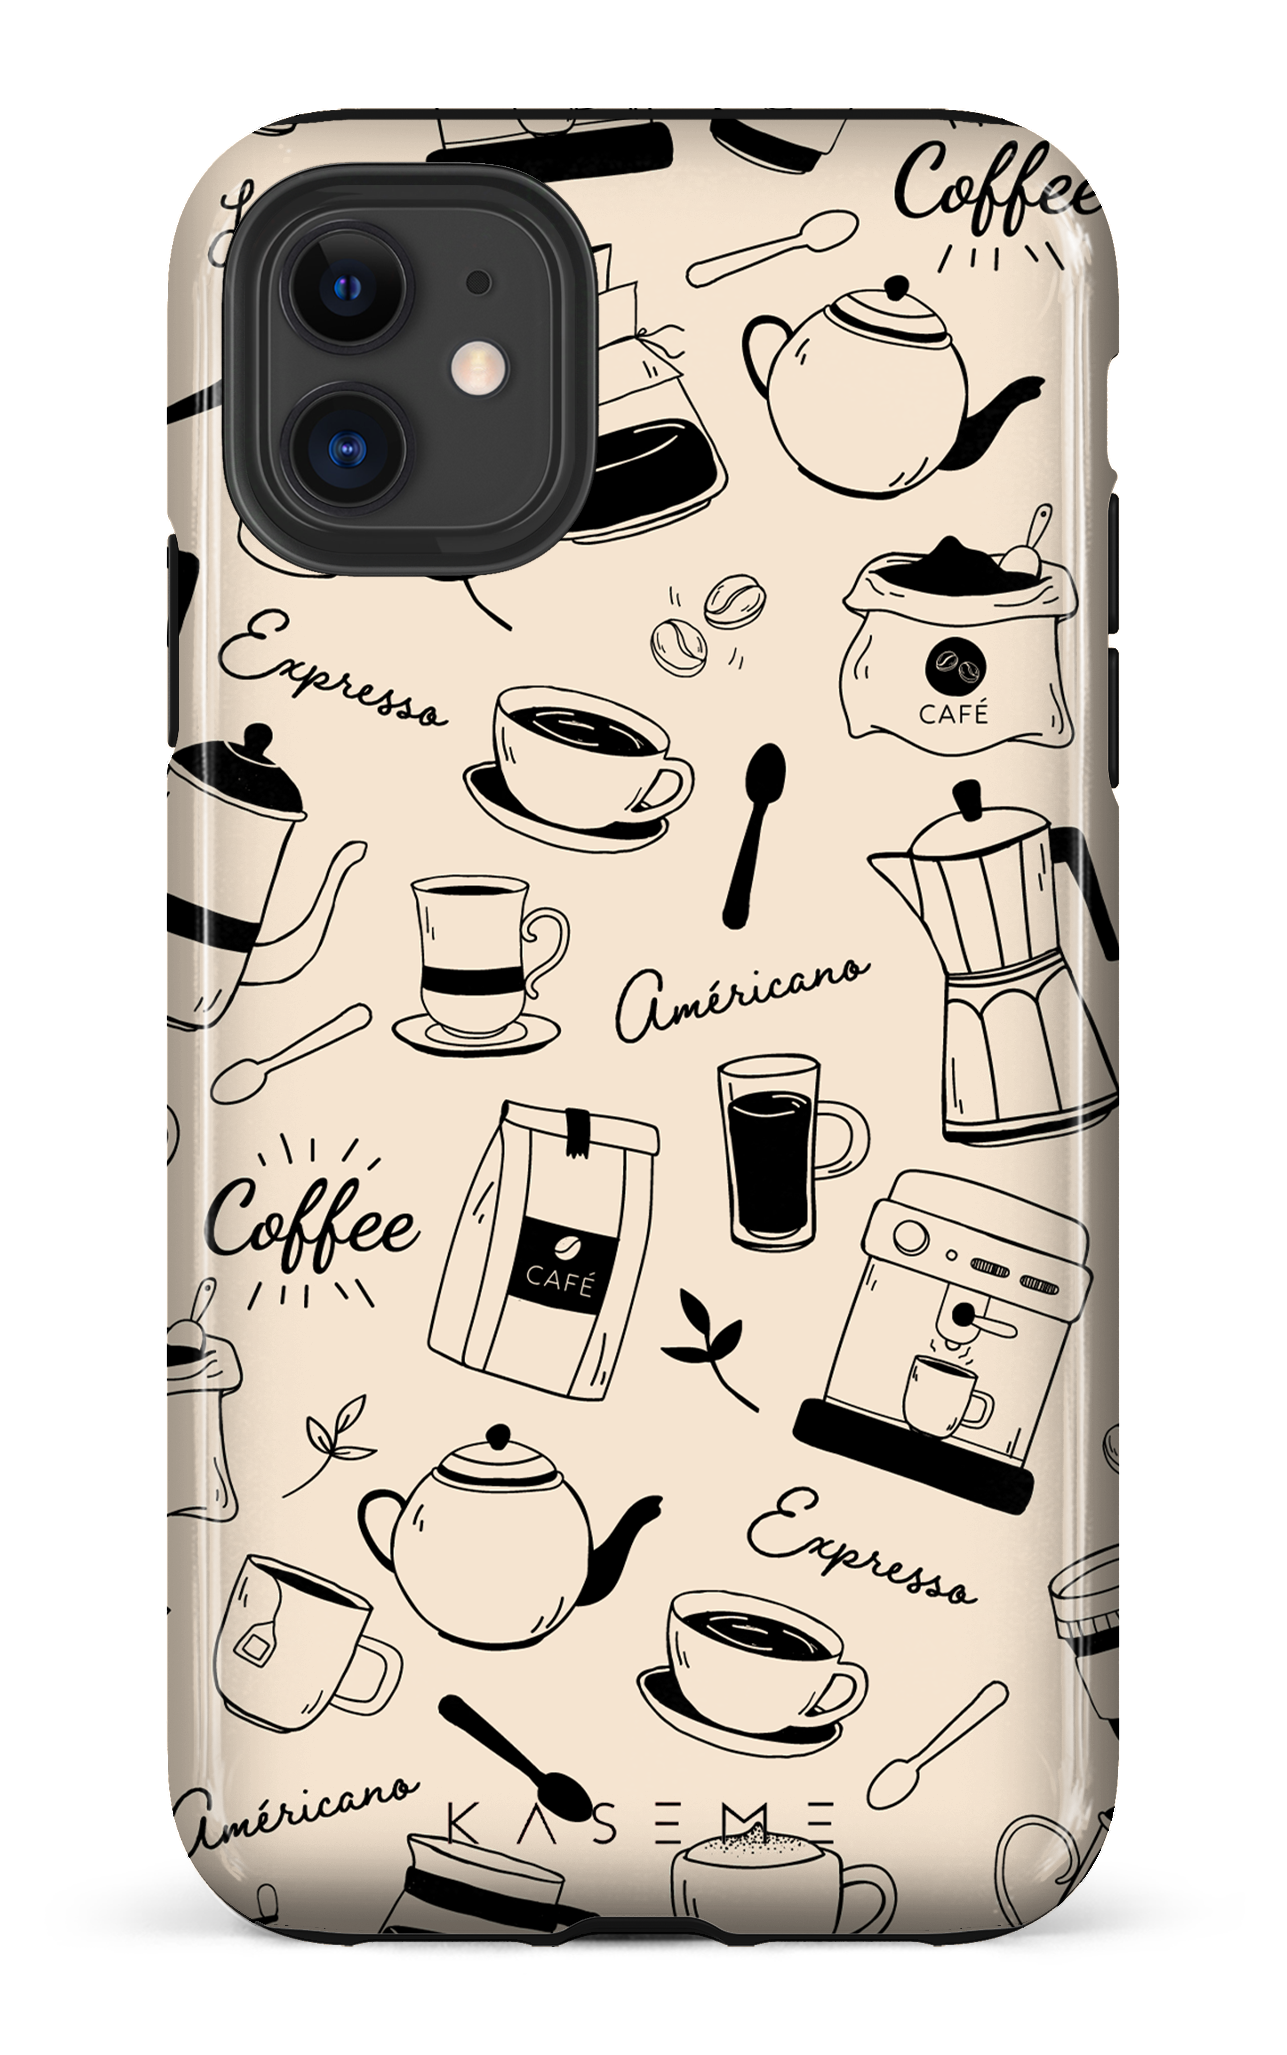 Espresso - iPhone 11